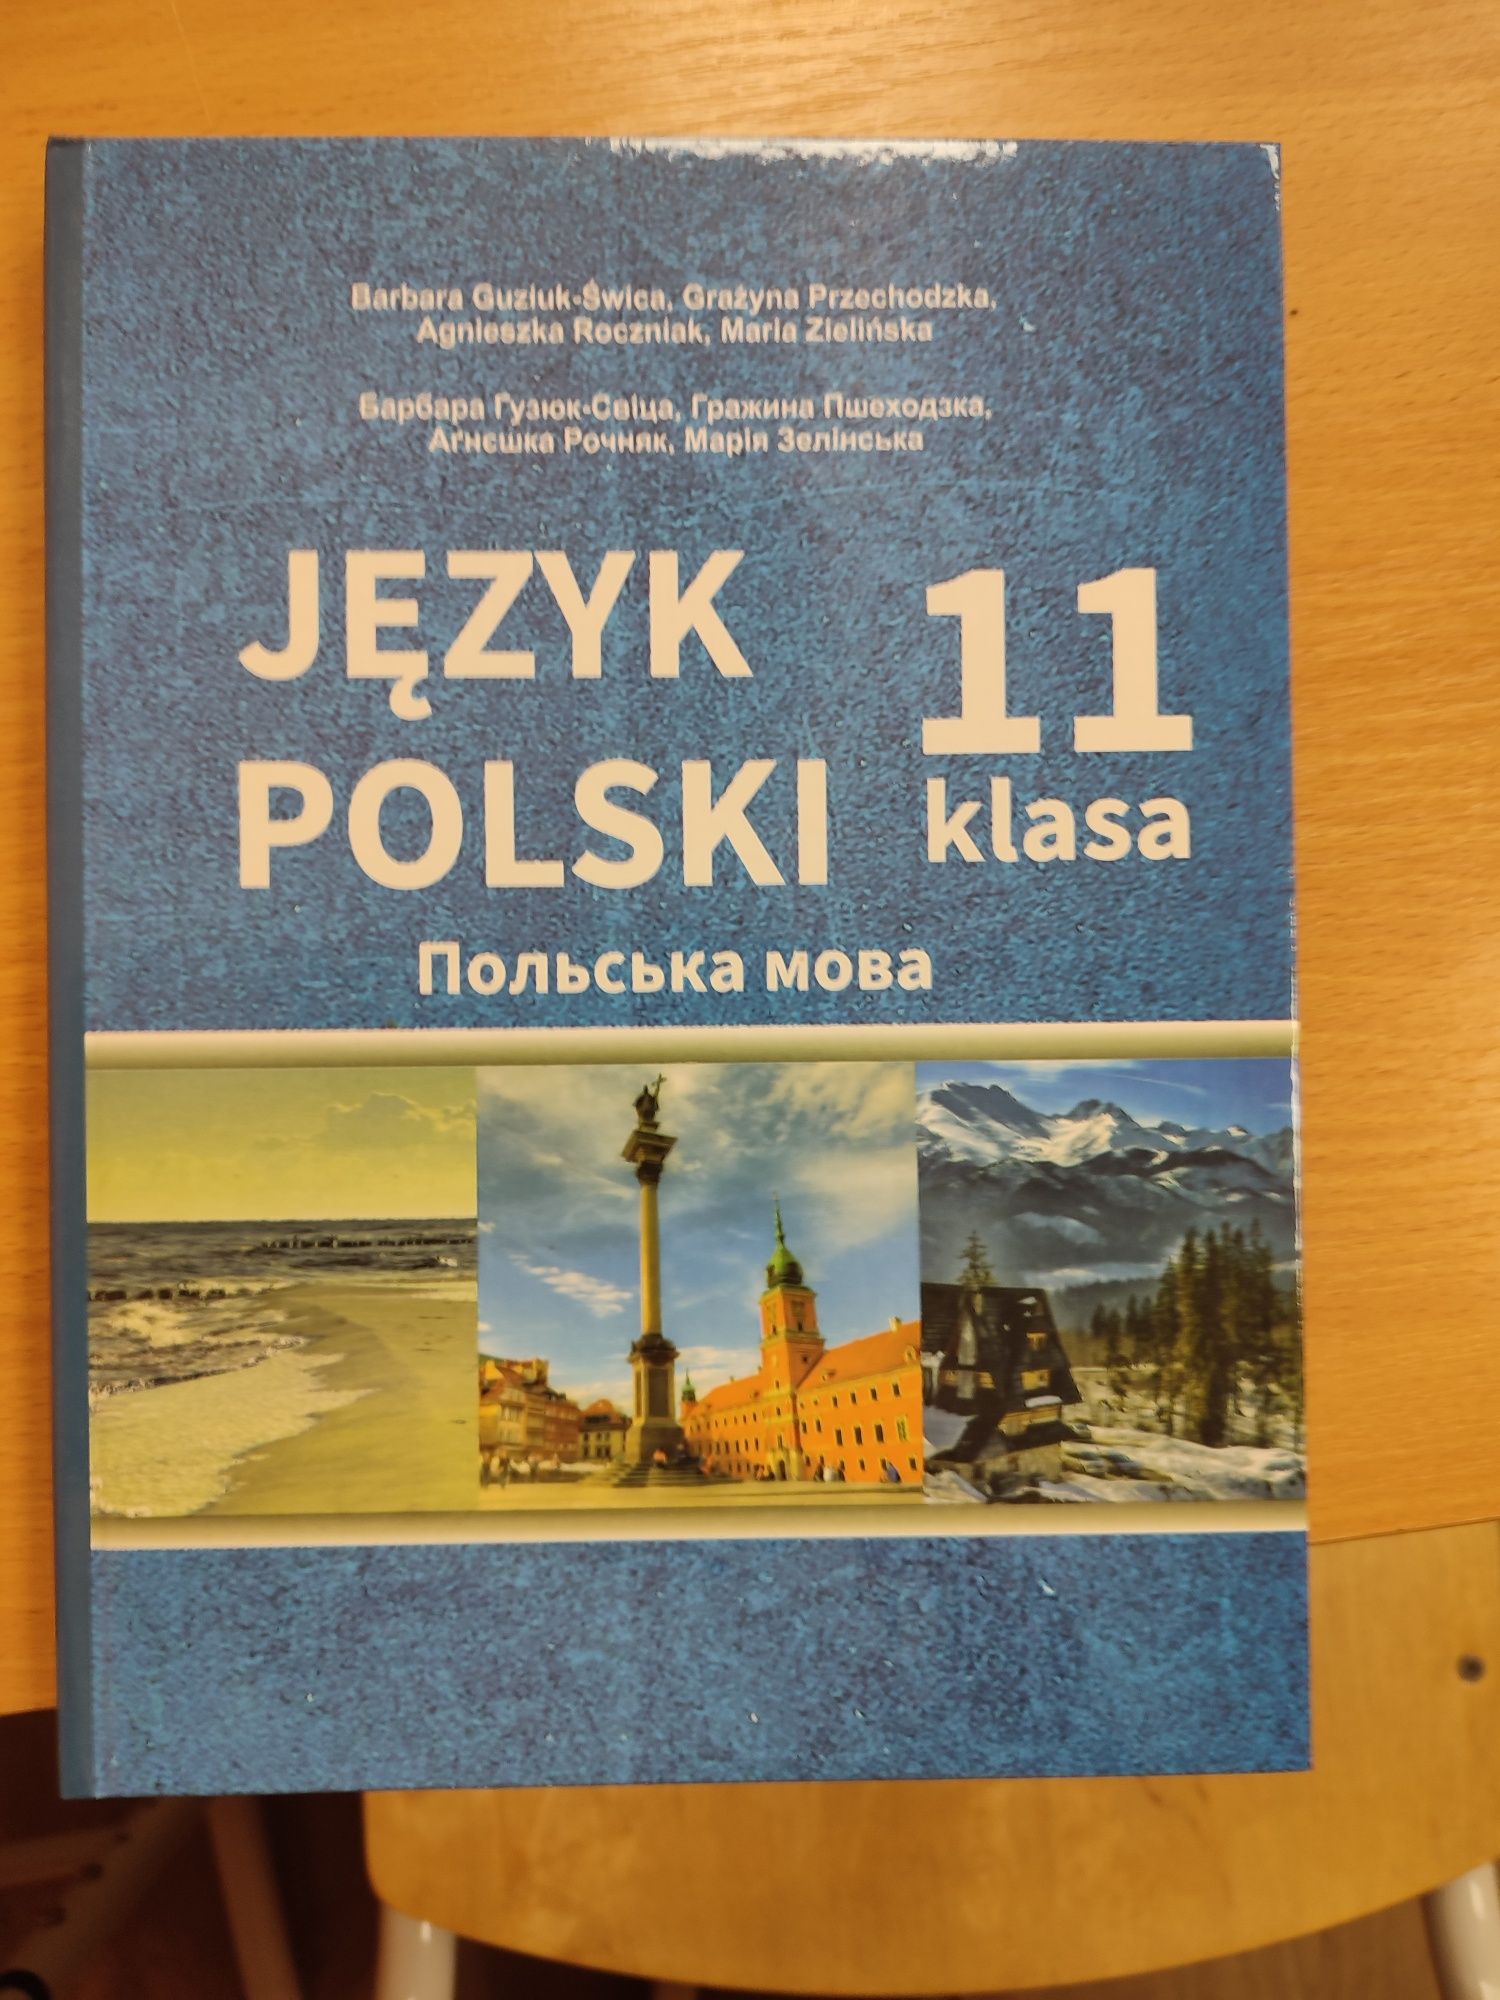 Підручник польської для 11 класу